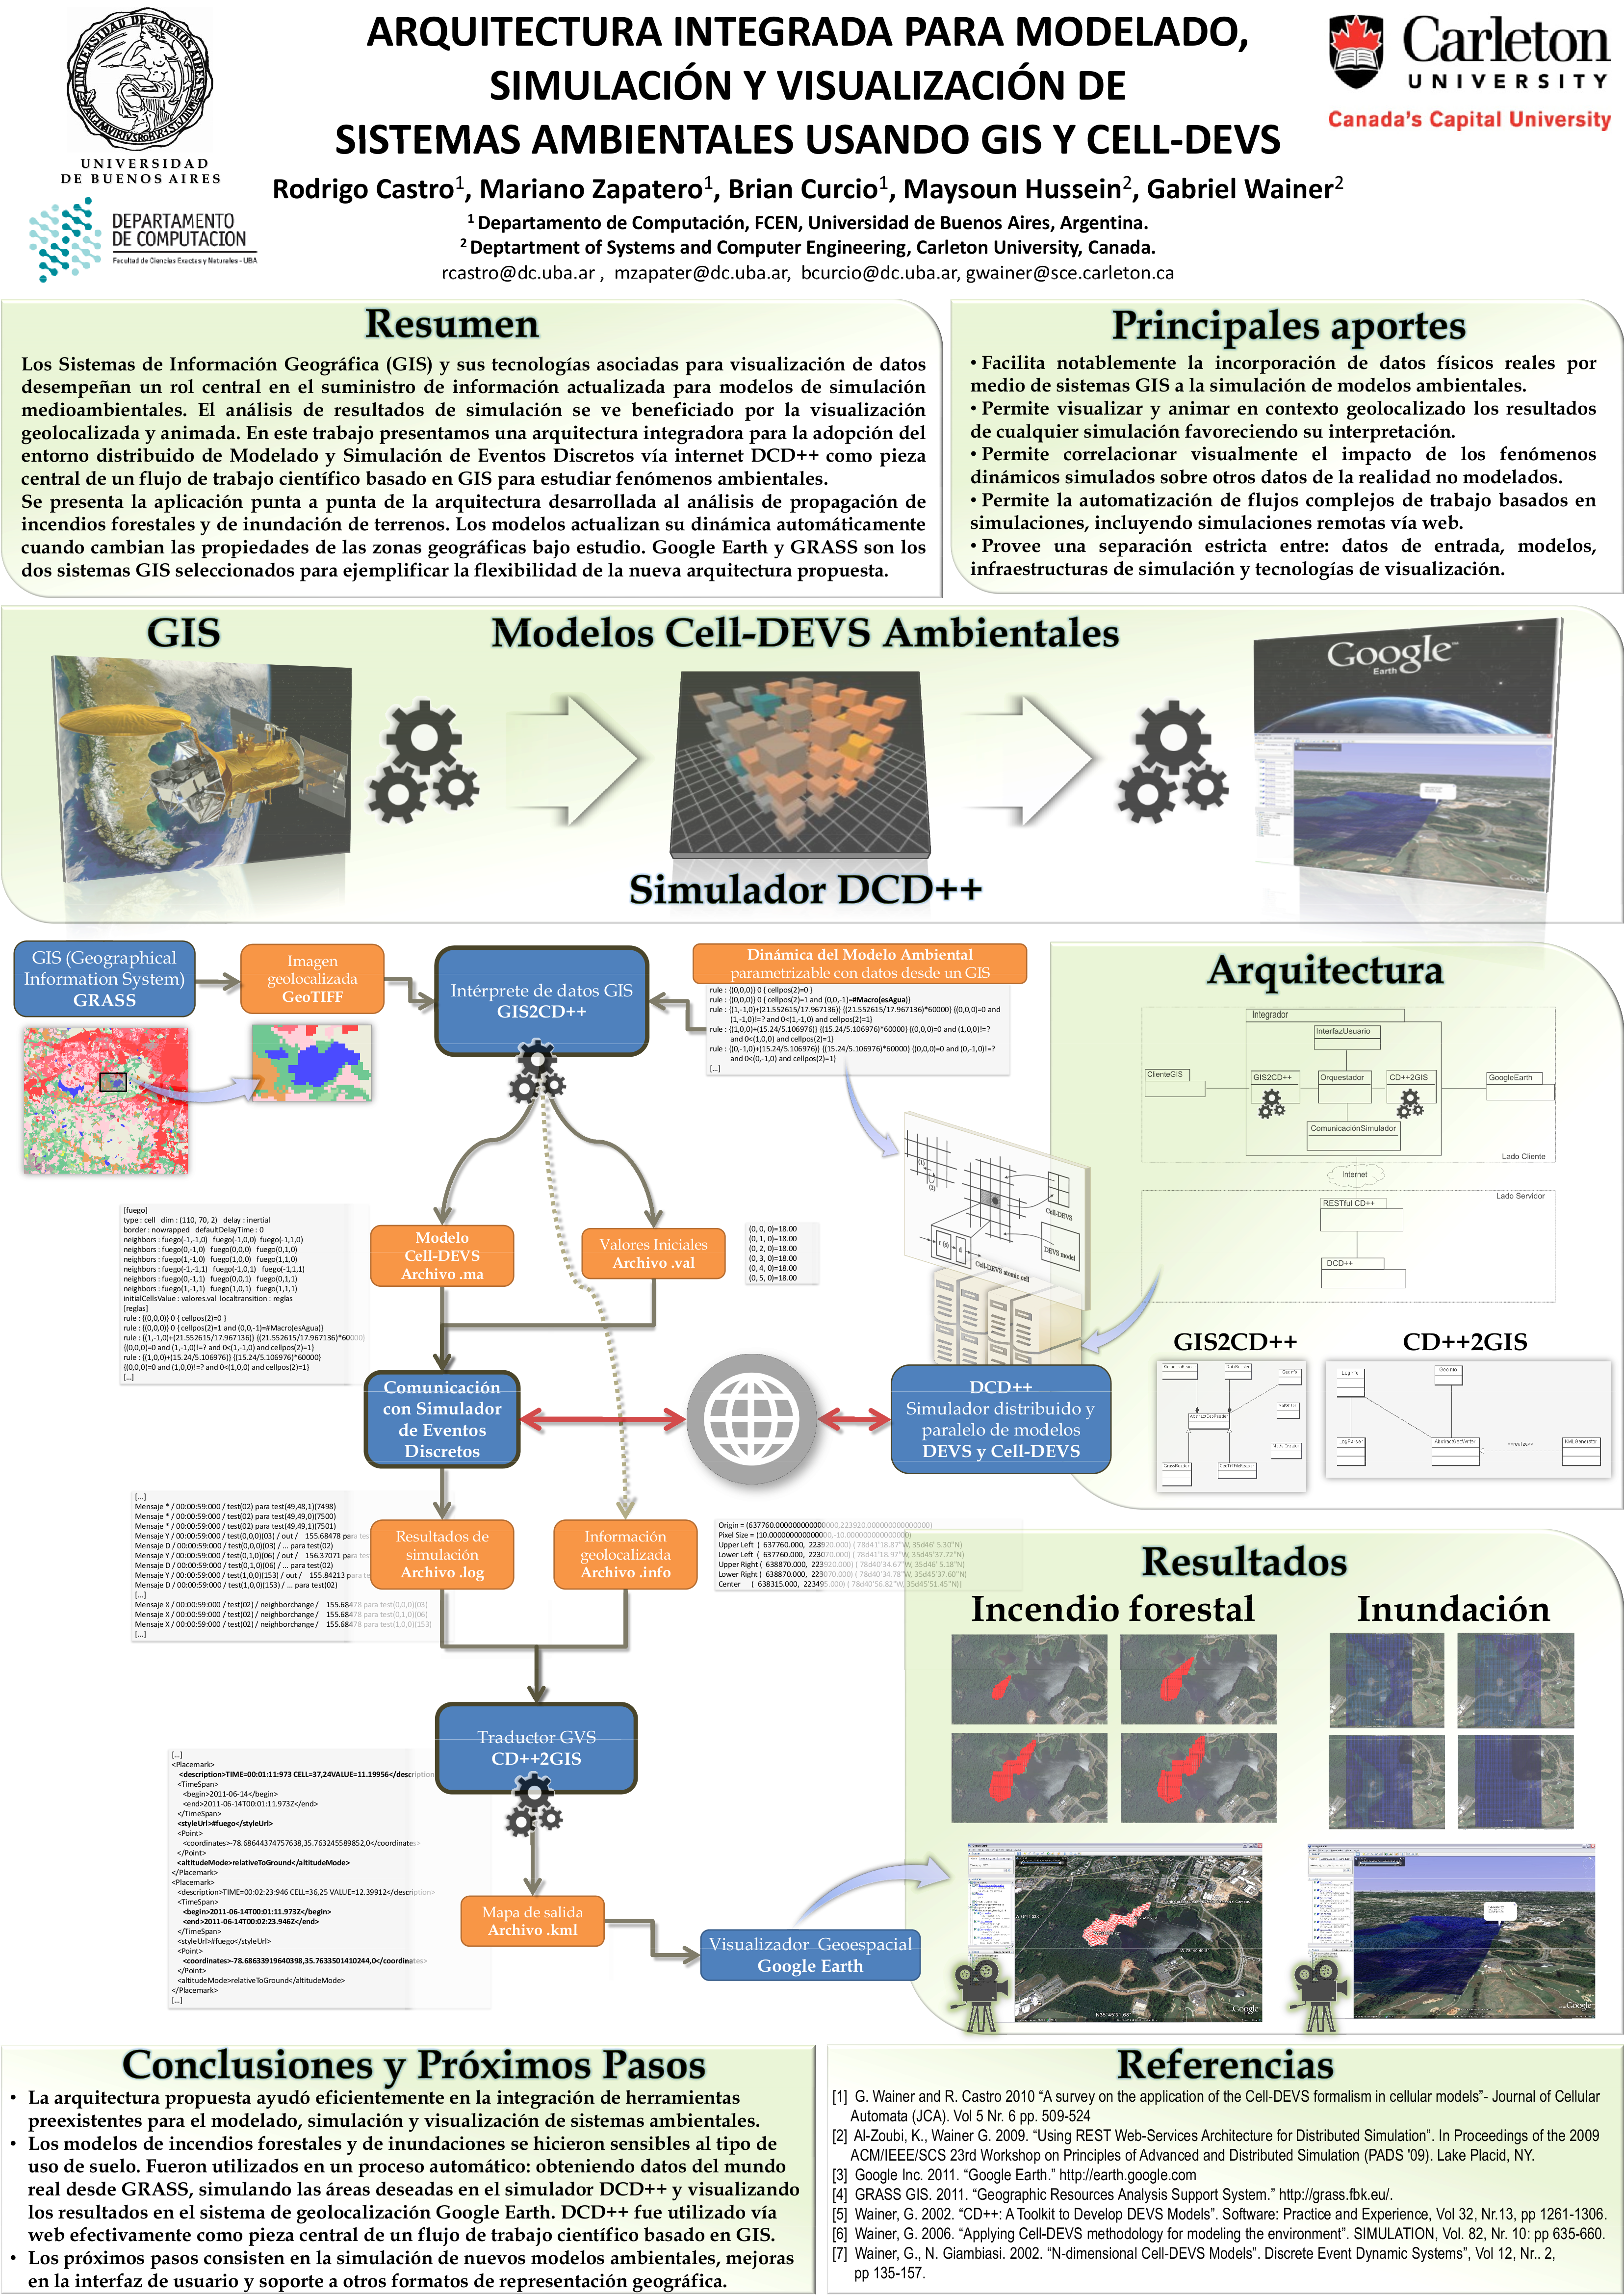 Arquitectura integrada para modelado, simulación y visualización de sistemas usando GIS y CELL-DEVS